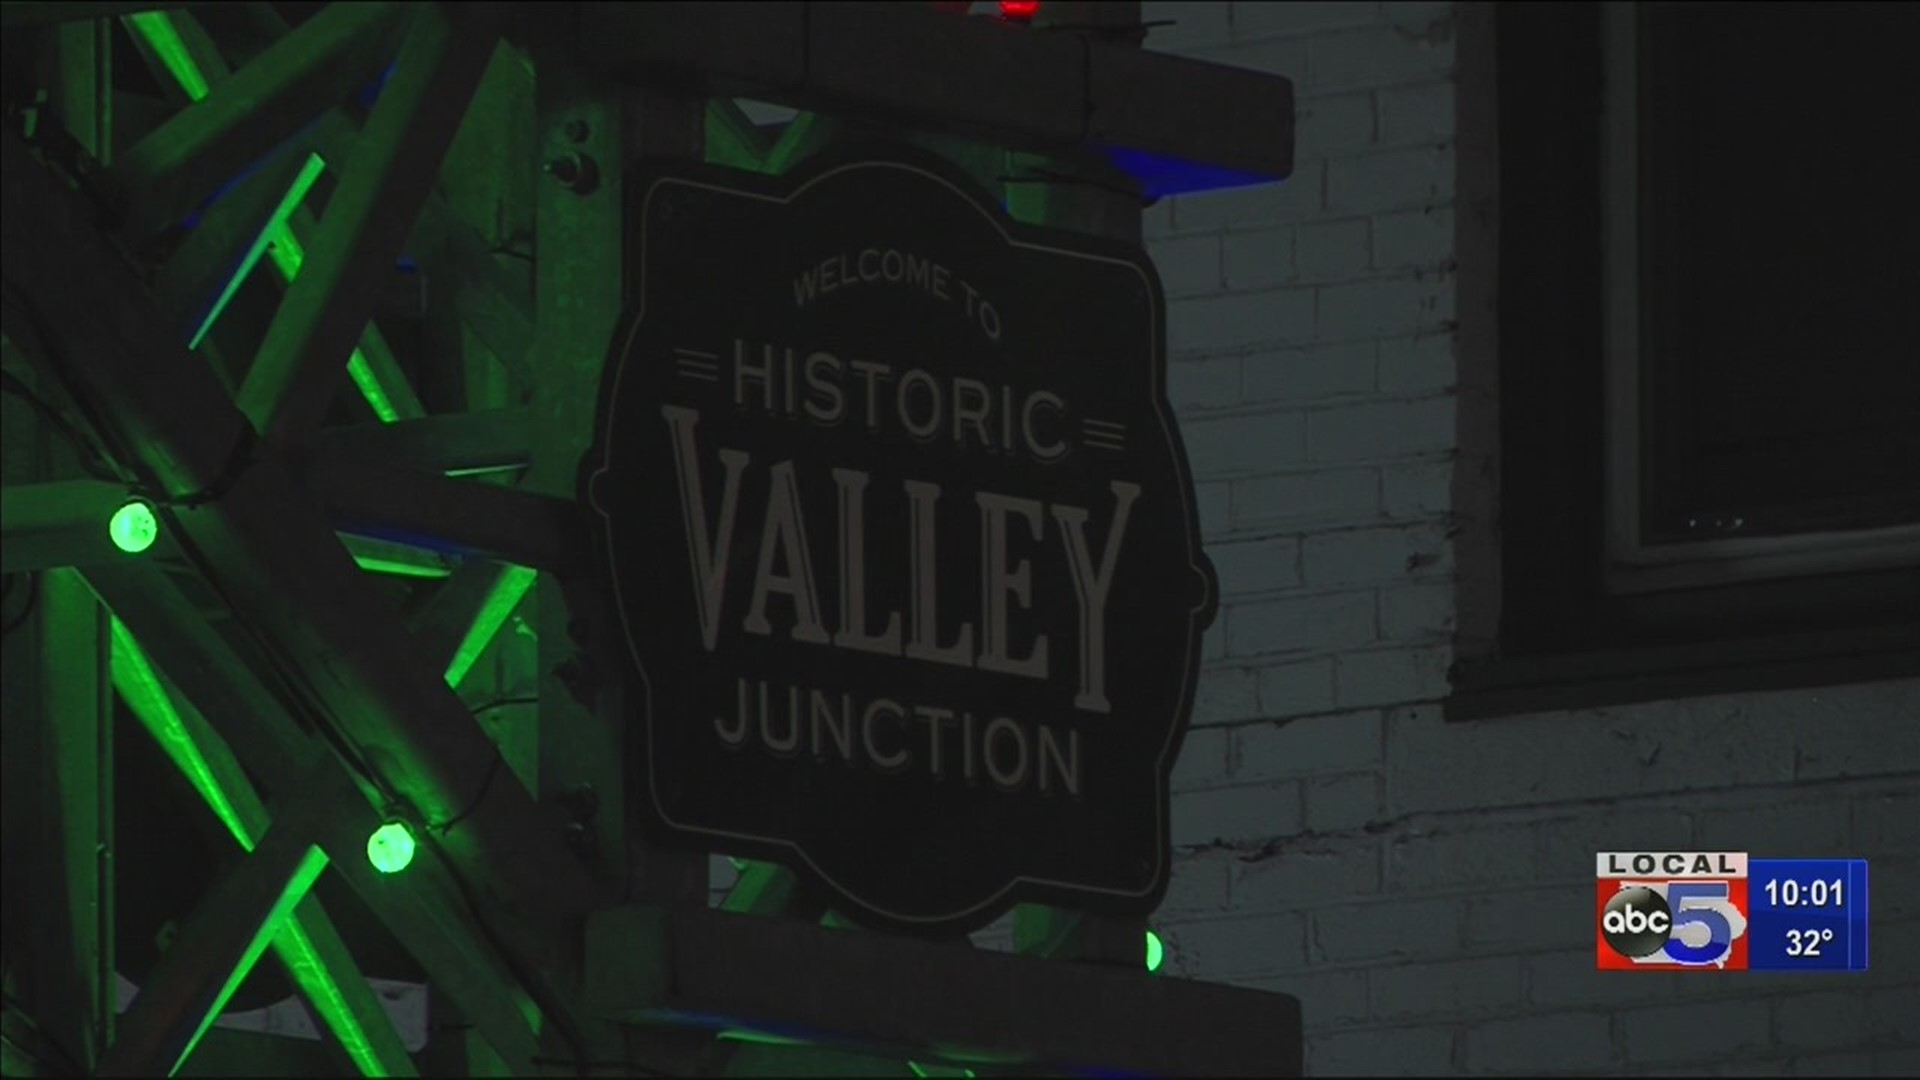 LIGHT Valley Junction kicks off the holiday season